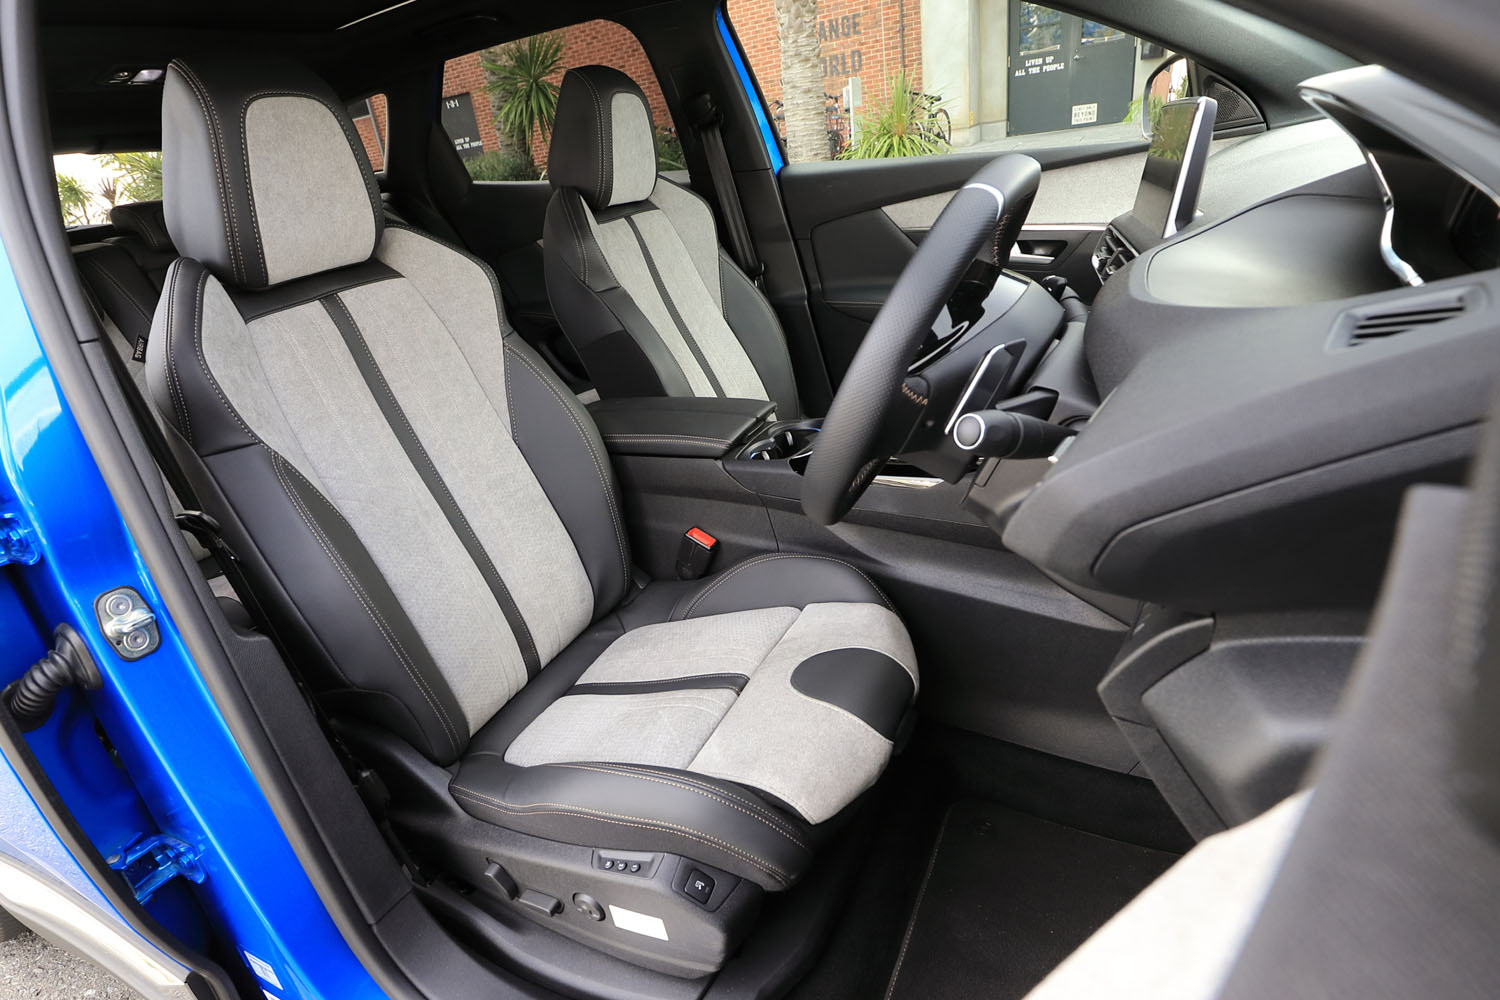 「3008 GTハイブリッド4」のシート表皮は、外装色にかかわらず写真のテップレザーとアルカンターラ（グレー）の組み合わせがスタンダード仕様となる。前席にはヒーター機能も内蔵されている。